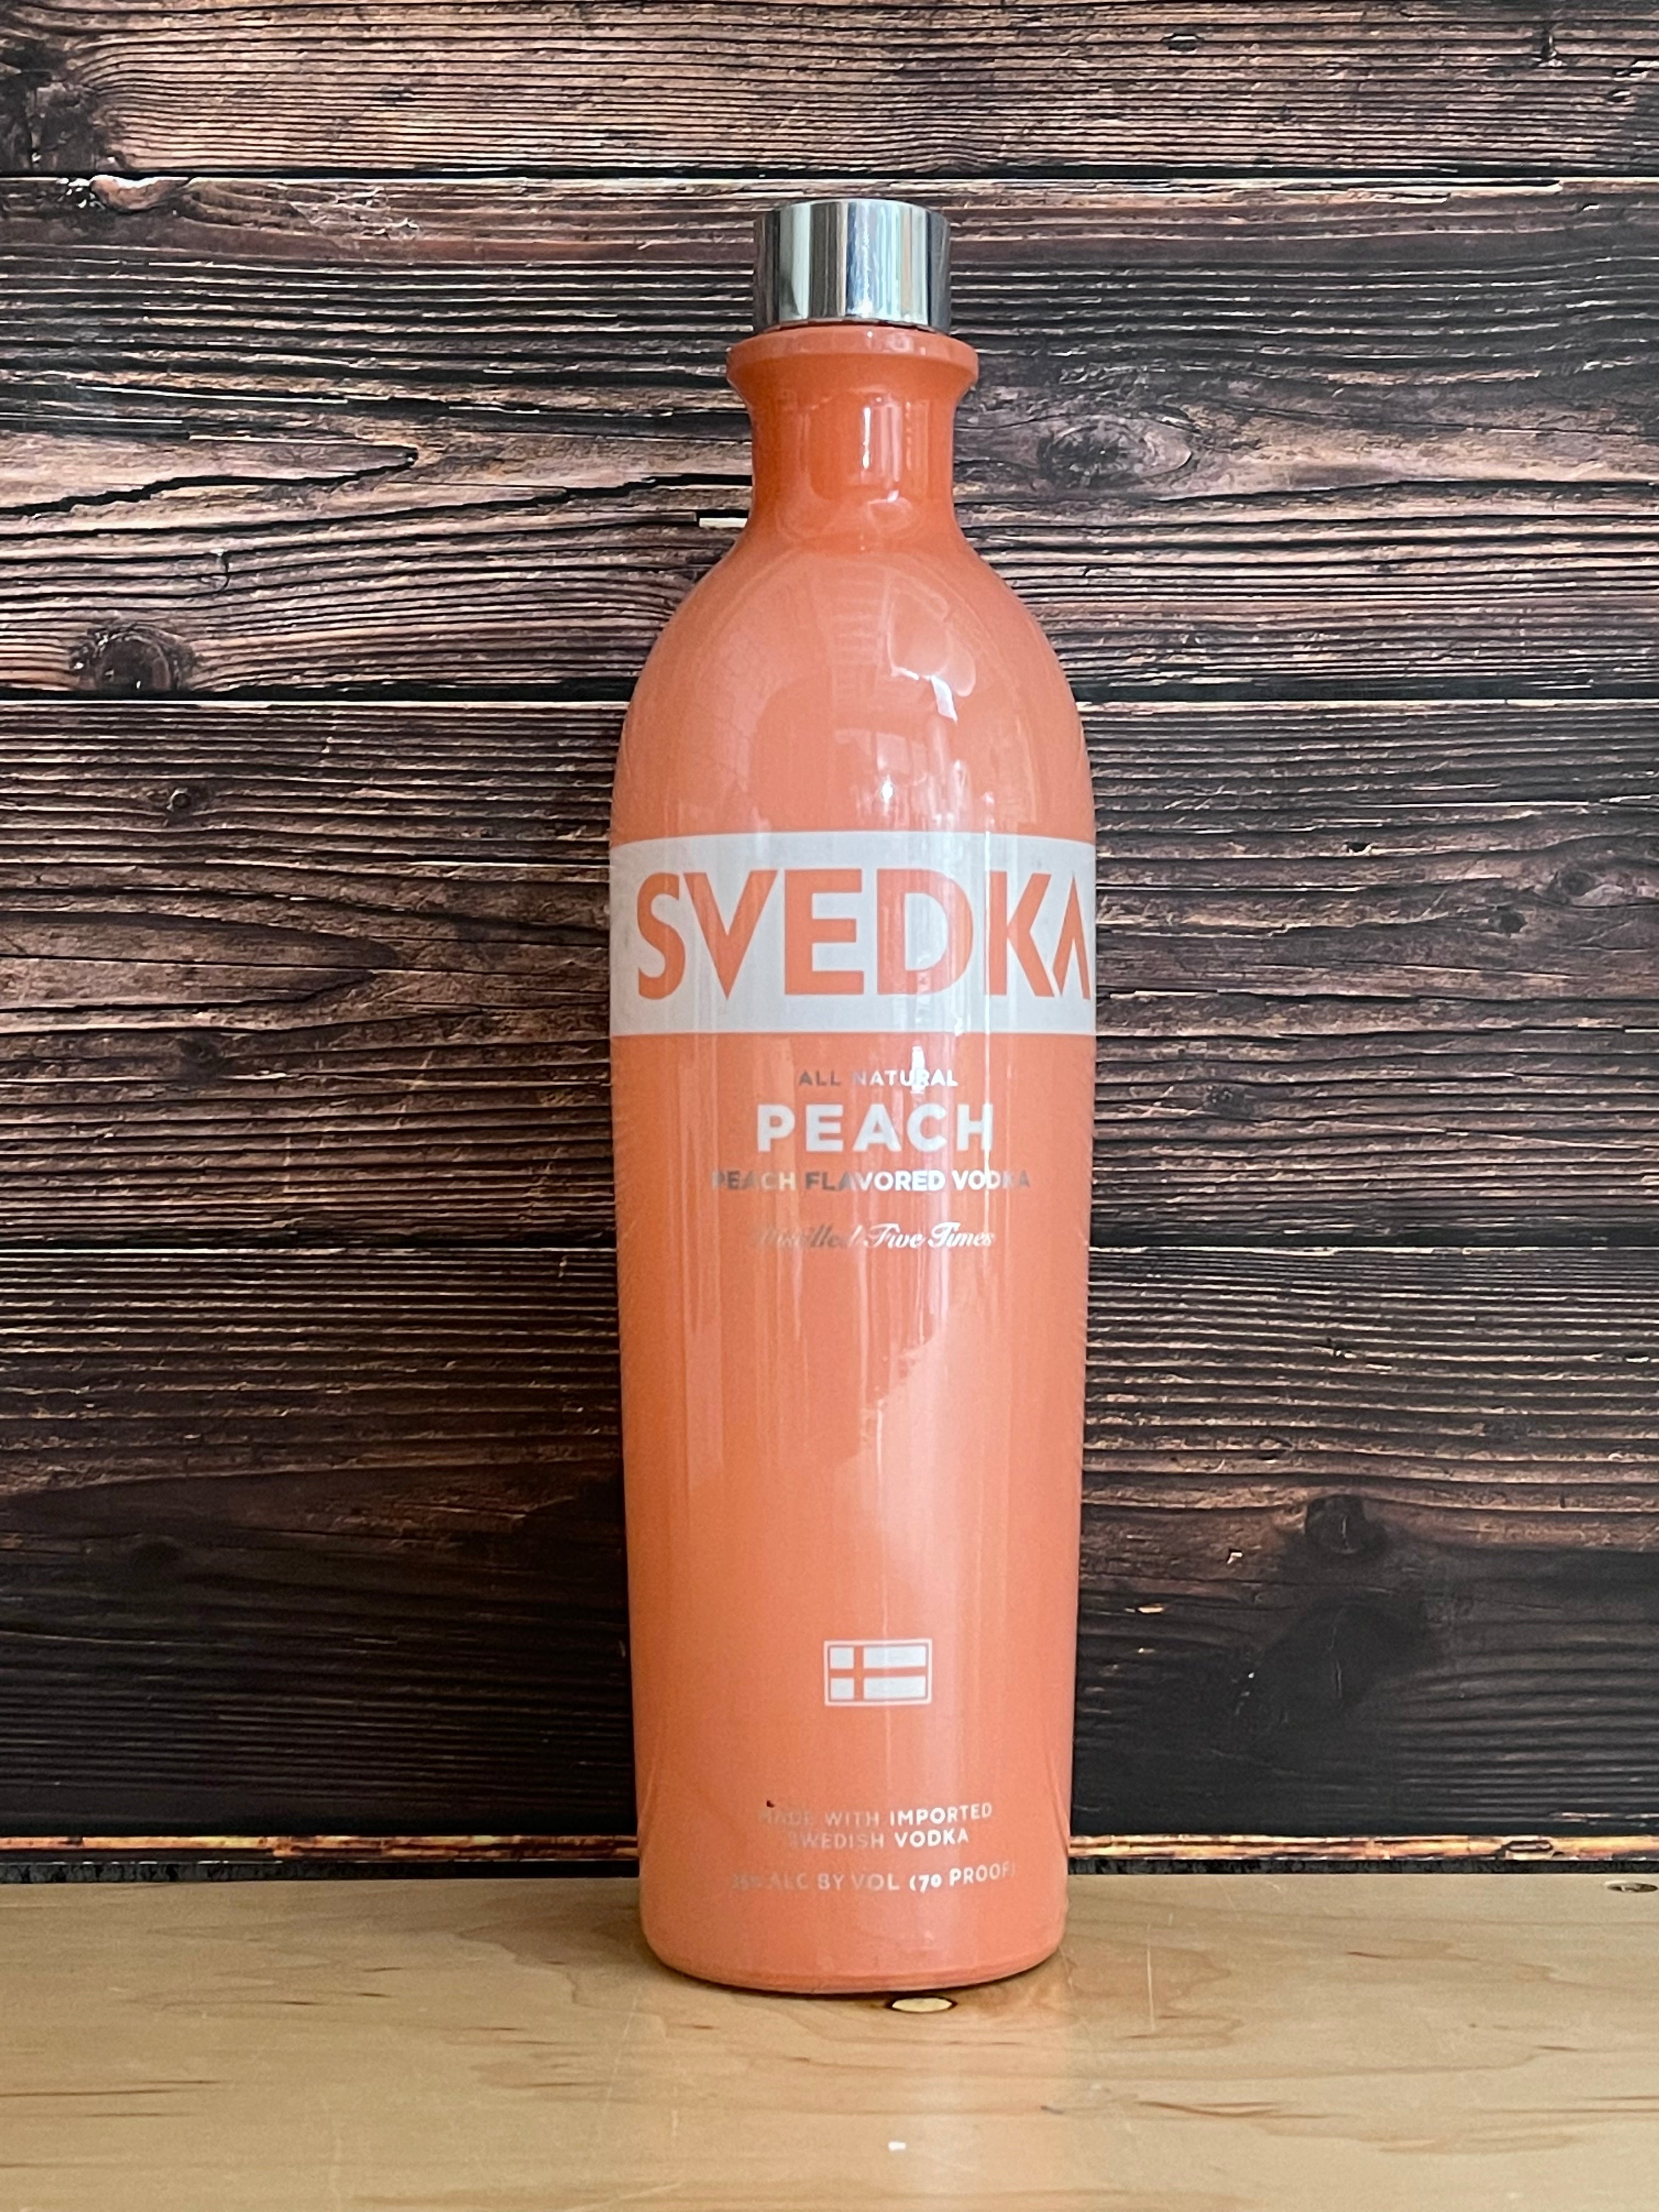 Svedka Peach Flavoured Swedish Vodka